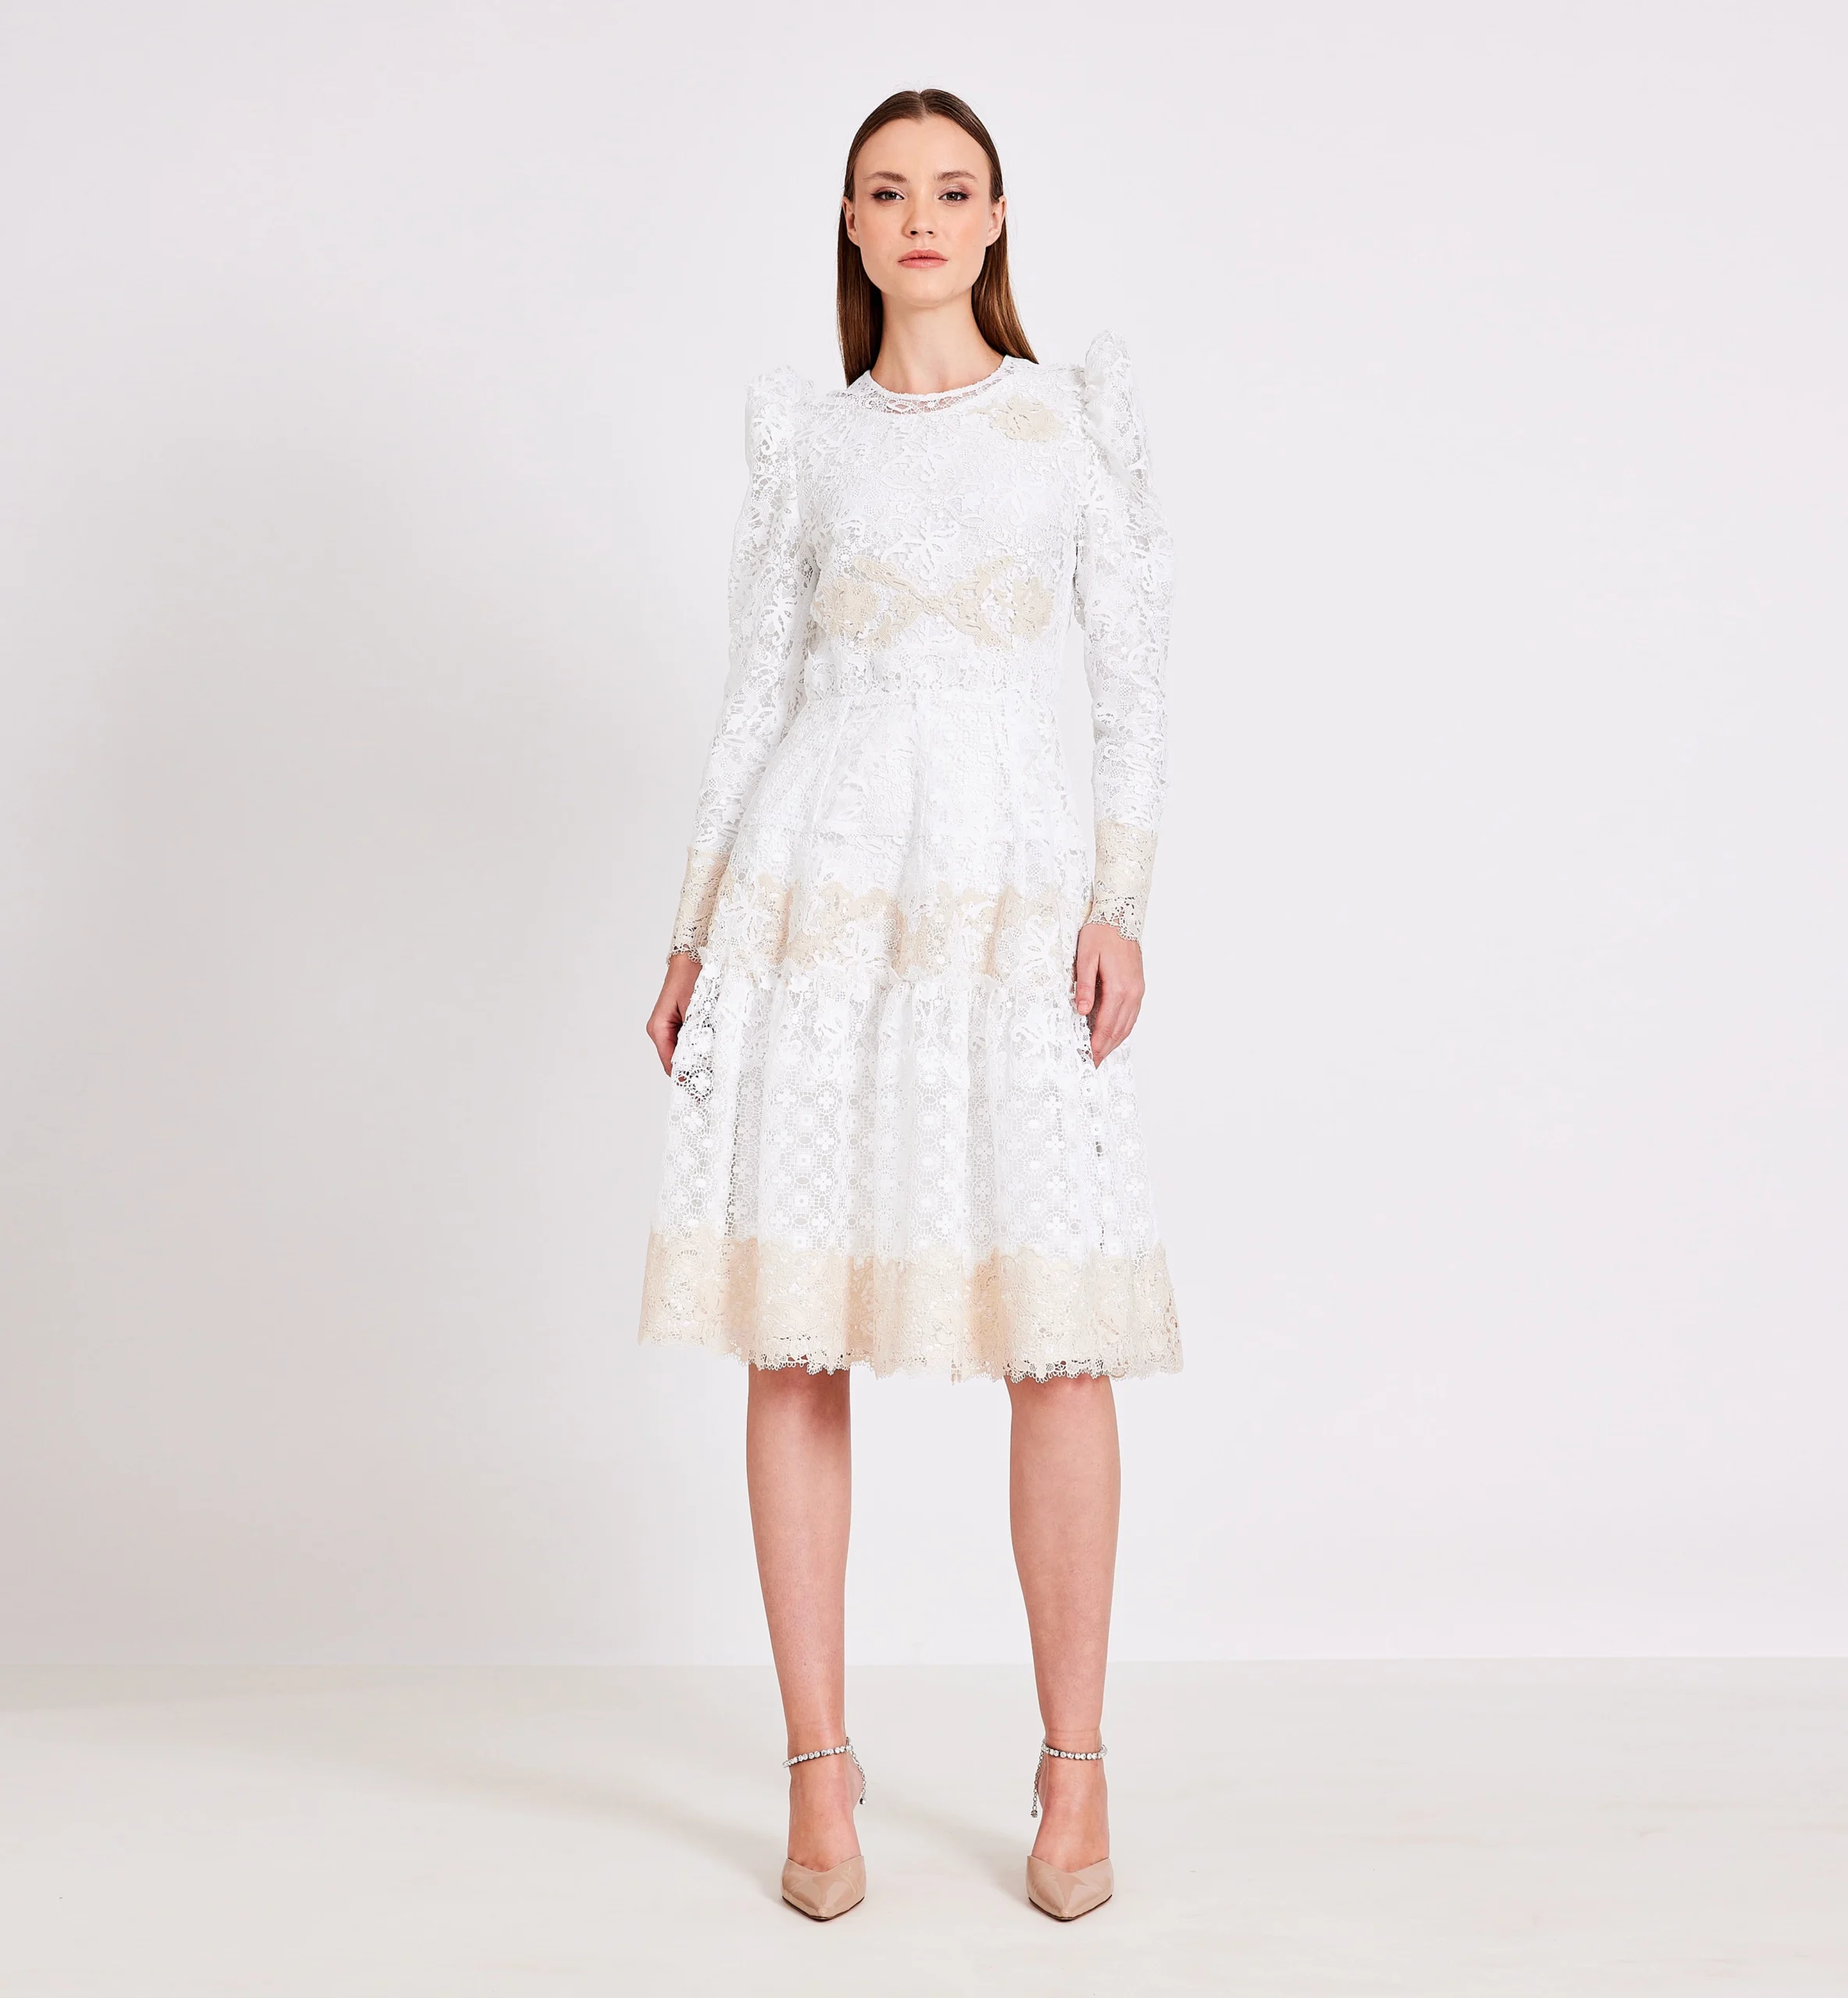 Lace combination dress, biege & white